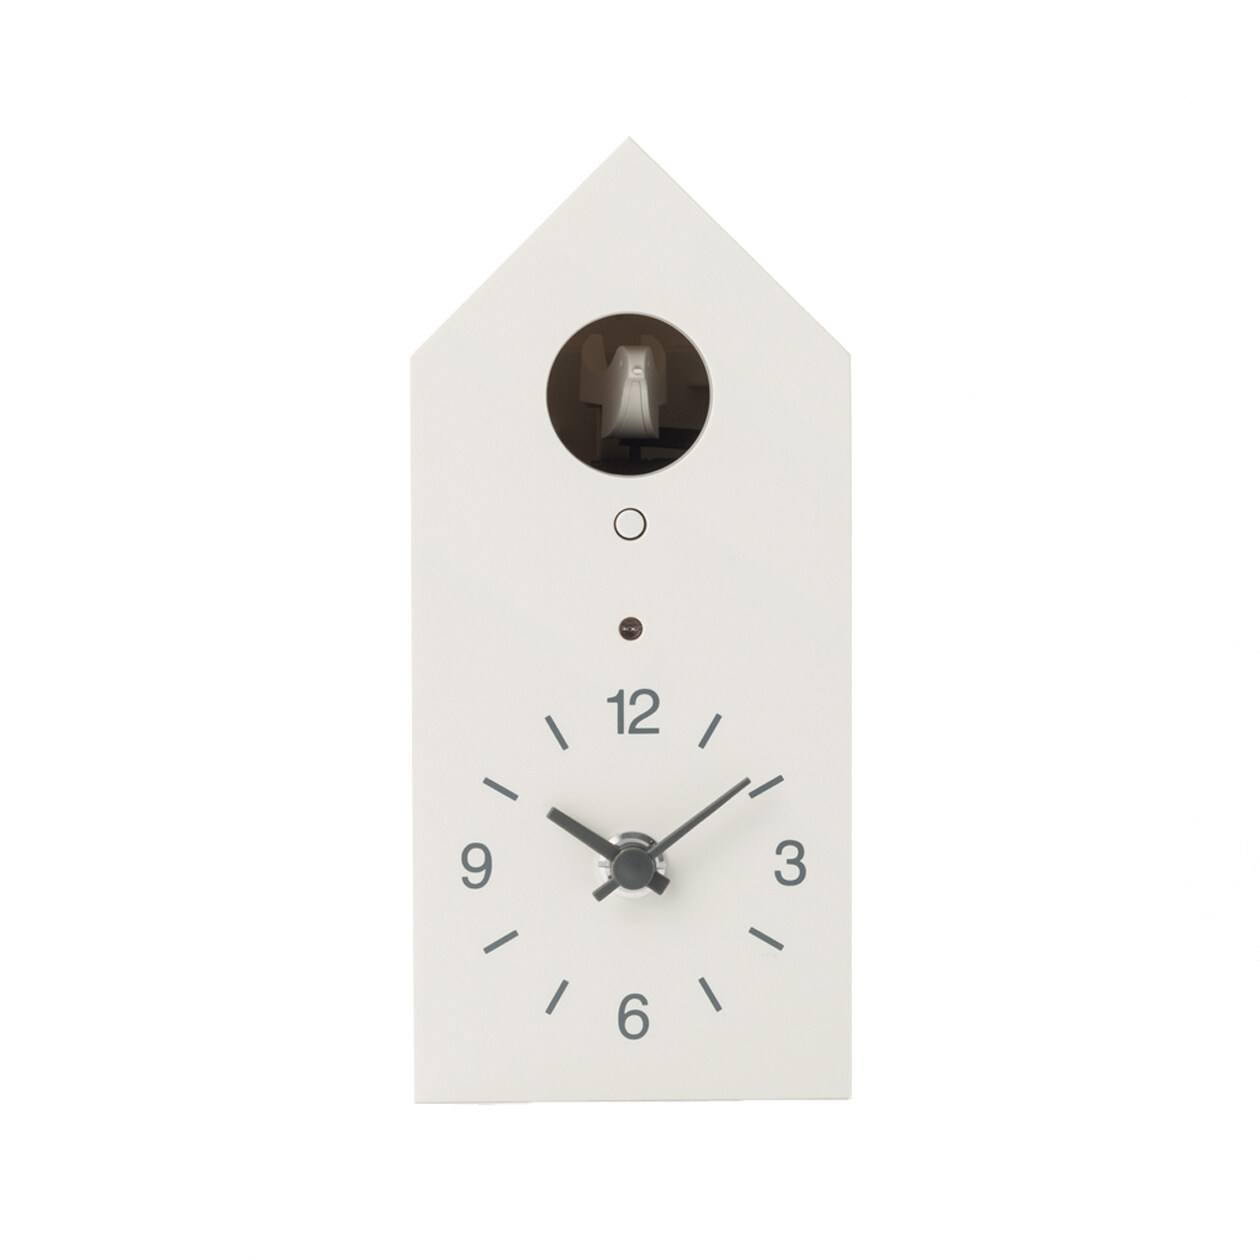 มูจิ นาฬิกานกคุกคู - MUJI Cuckoo Clock